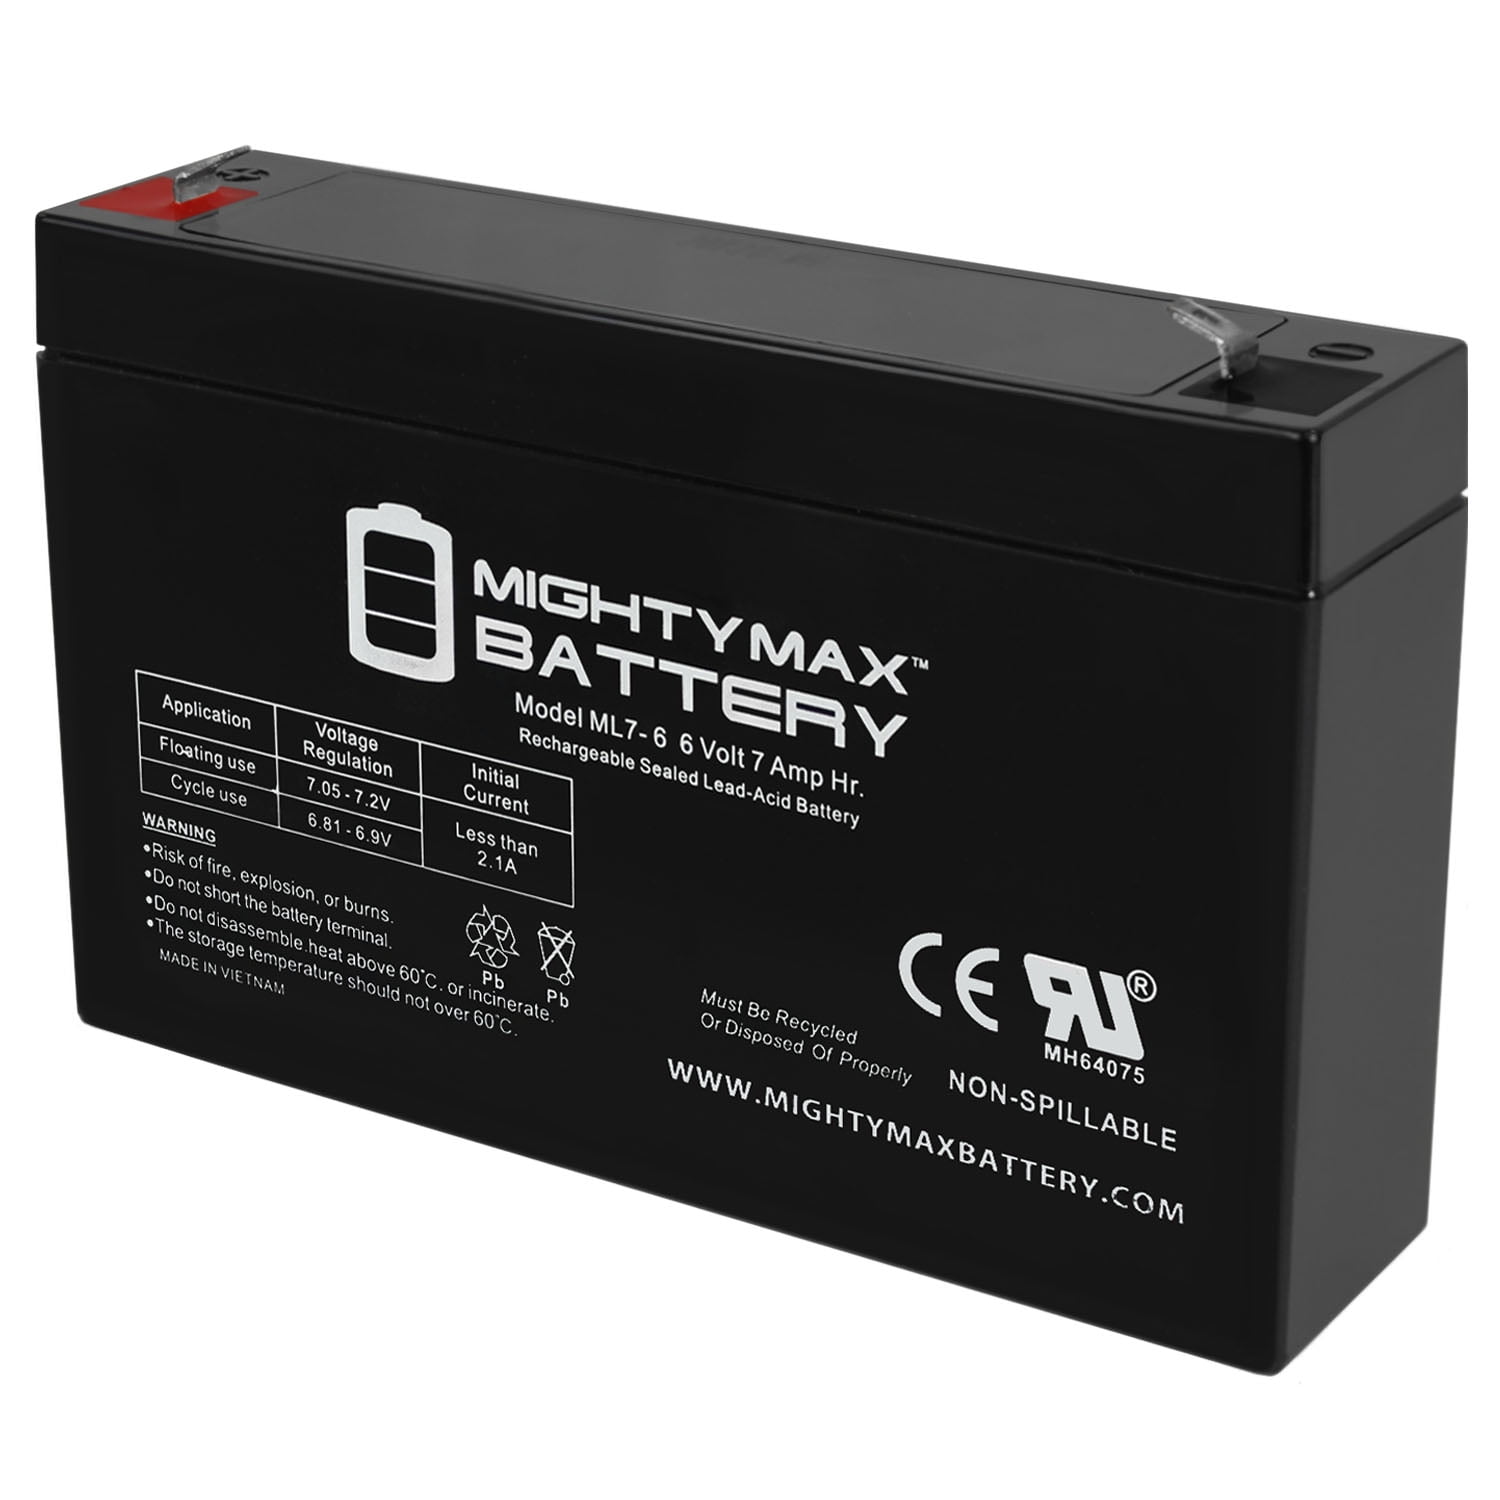 Chem Tablets Battery Rejuvenator Works On 12Volt Or 6 Volt Cars Motorcycle Atv 